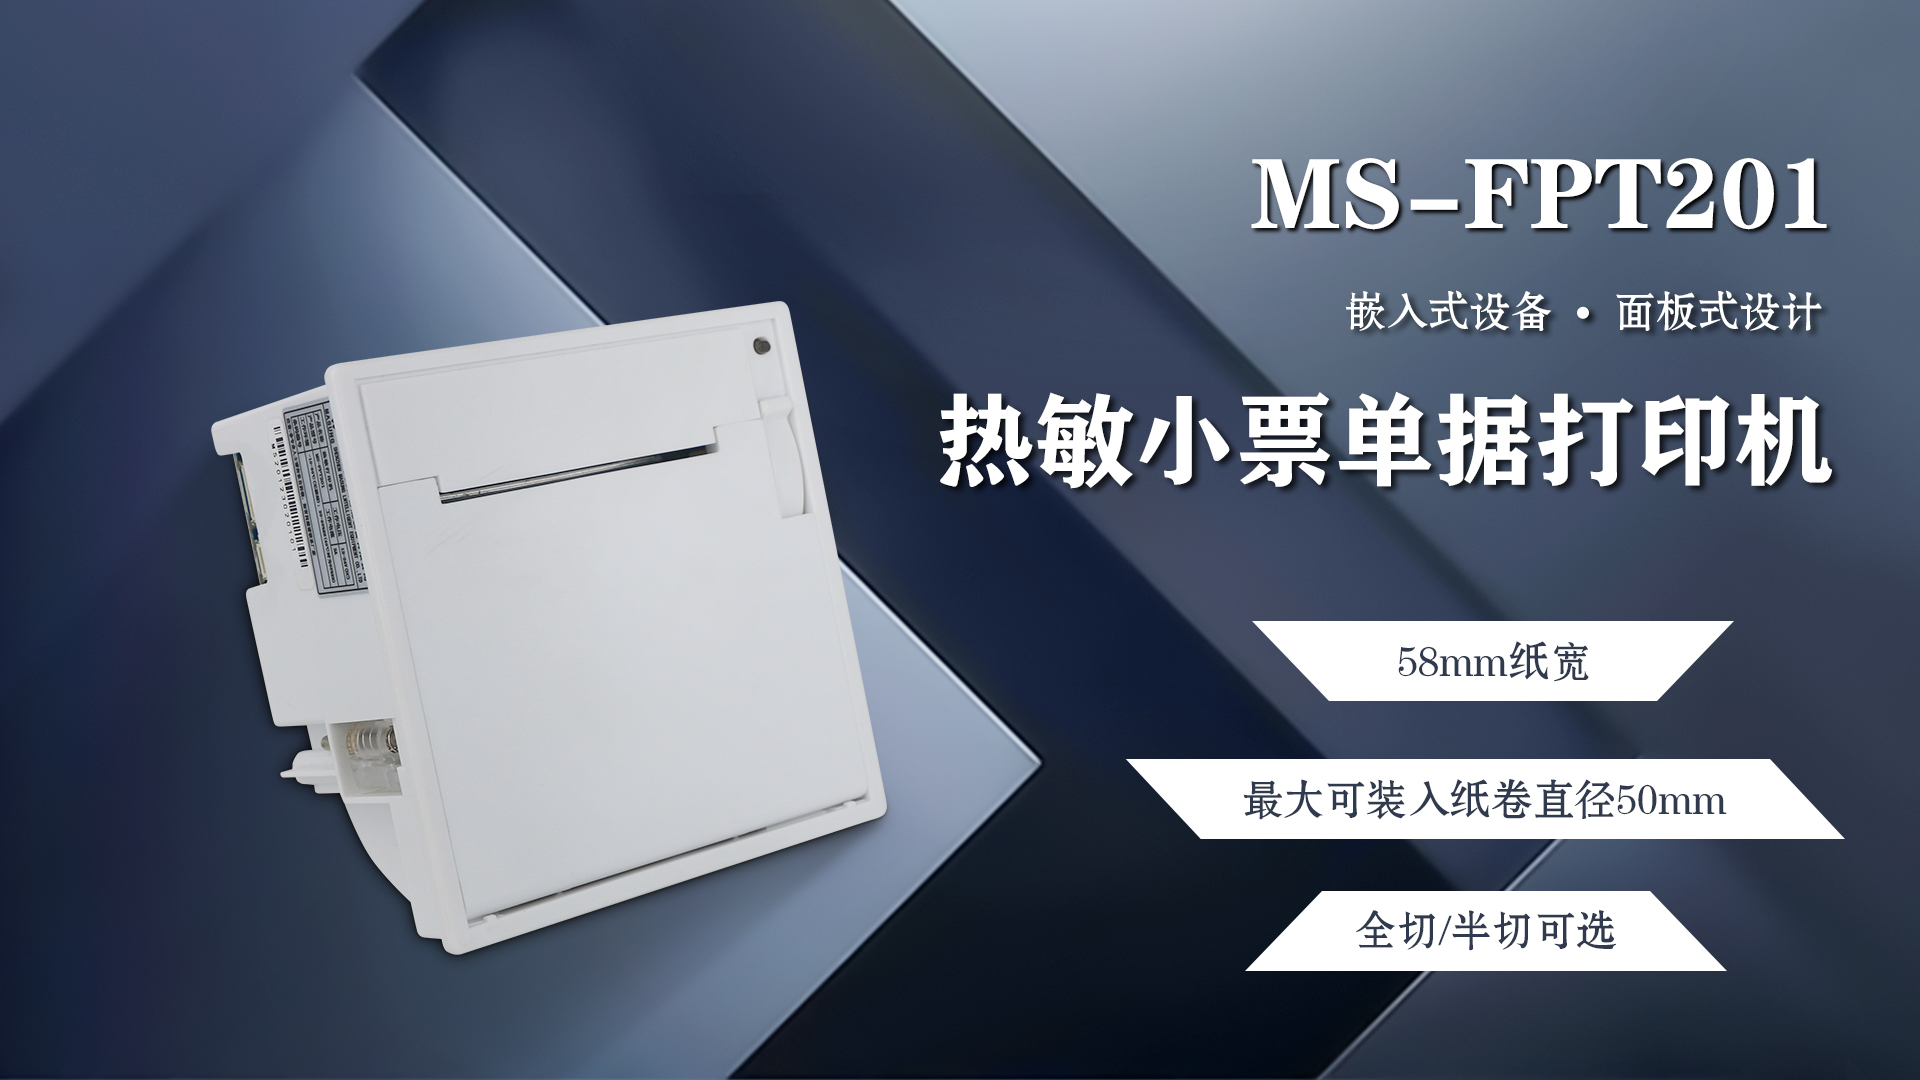 美松58mm嵌入式面板票据打印机MS-FPT201应用于称重显示